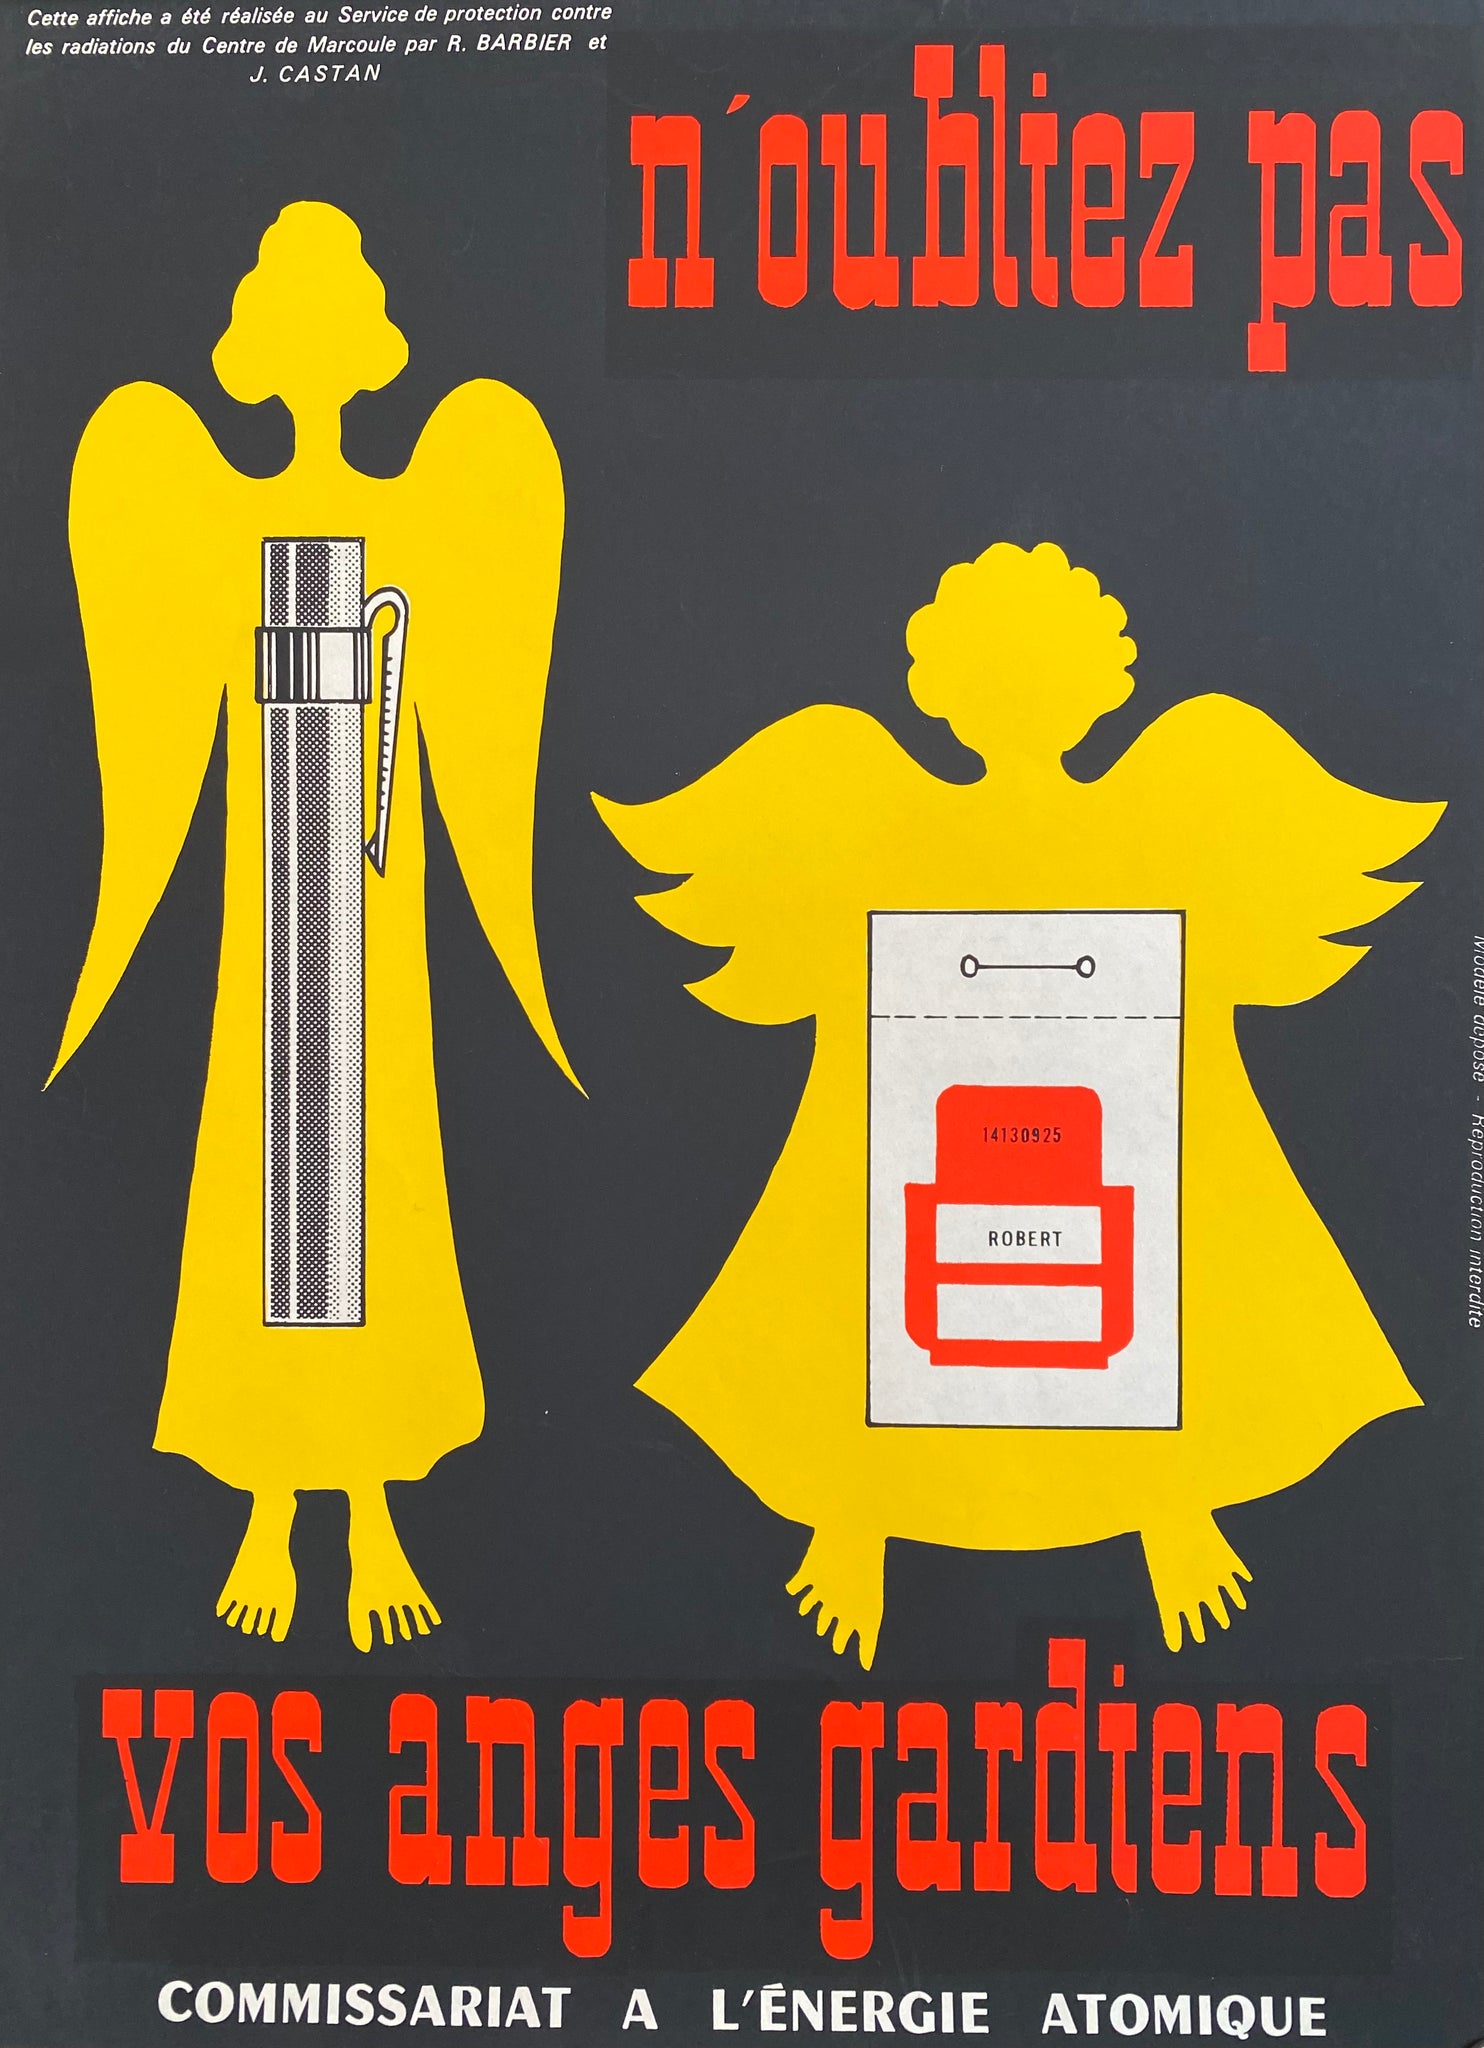 Les affiches de la campagne de l'AIEA en 1964 sur la radioactivité : une information toujours d'actualité pour une prise de conscience sur les risques de la radiation et les mesures de prévention à prendre.